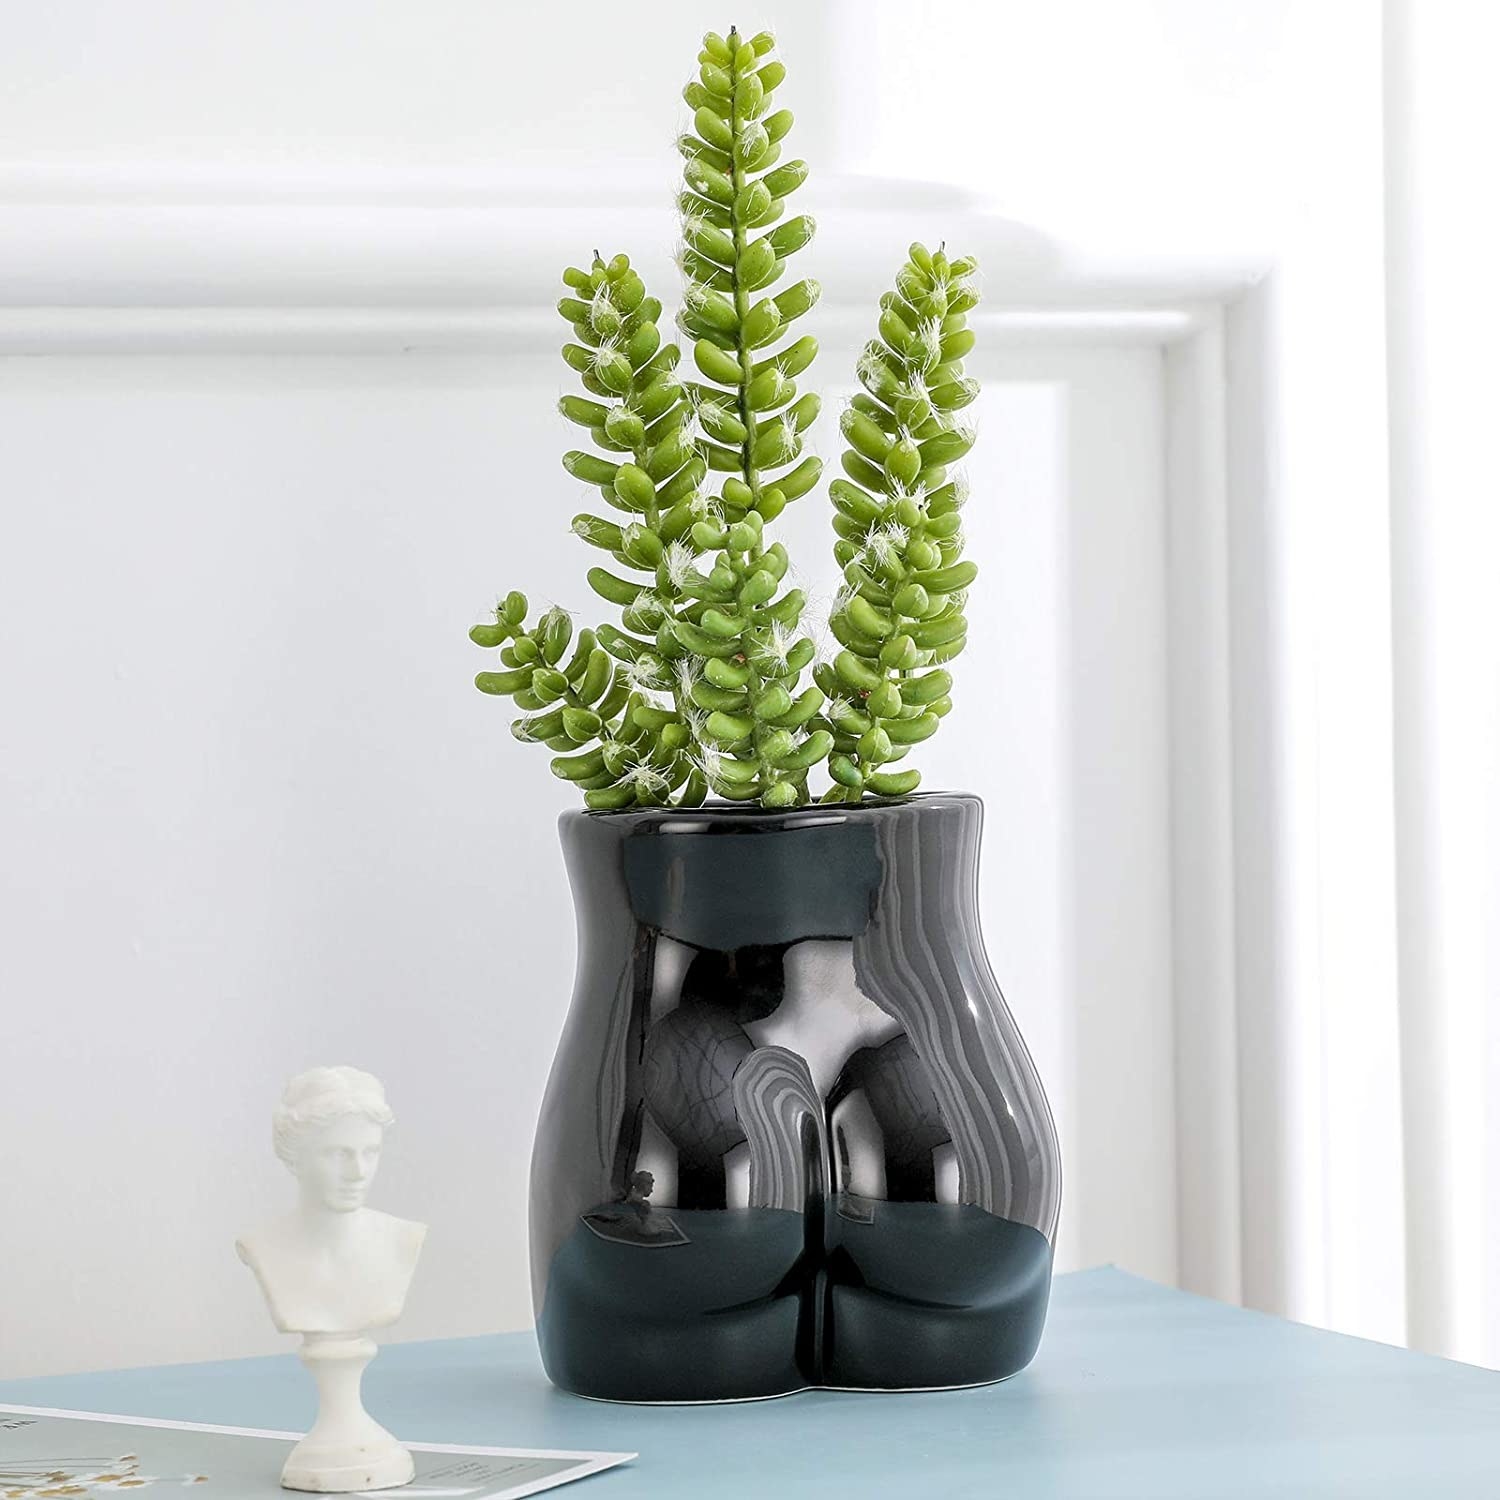 black flower vase shaped like a butt